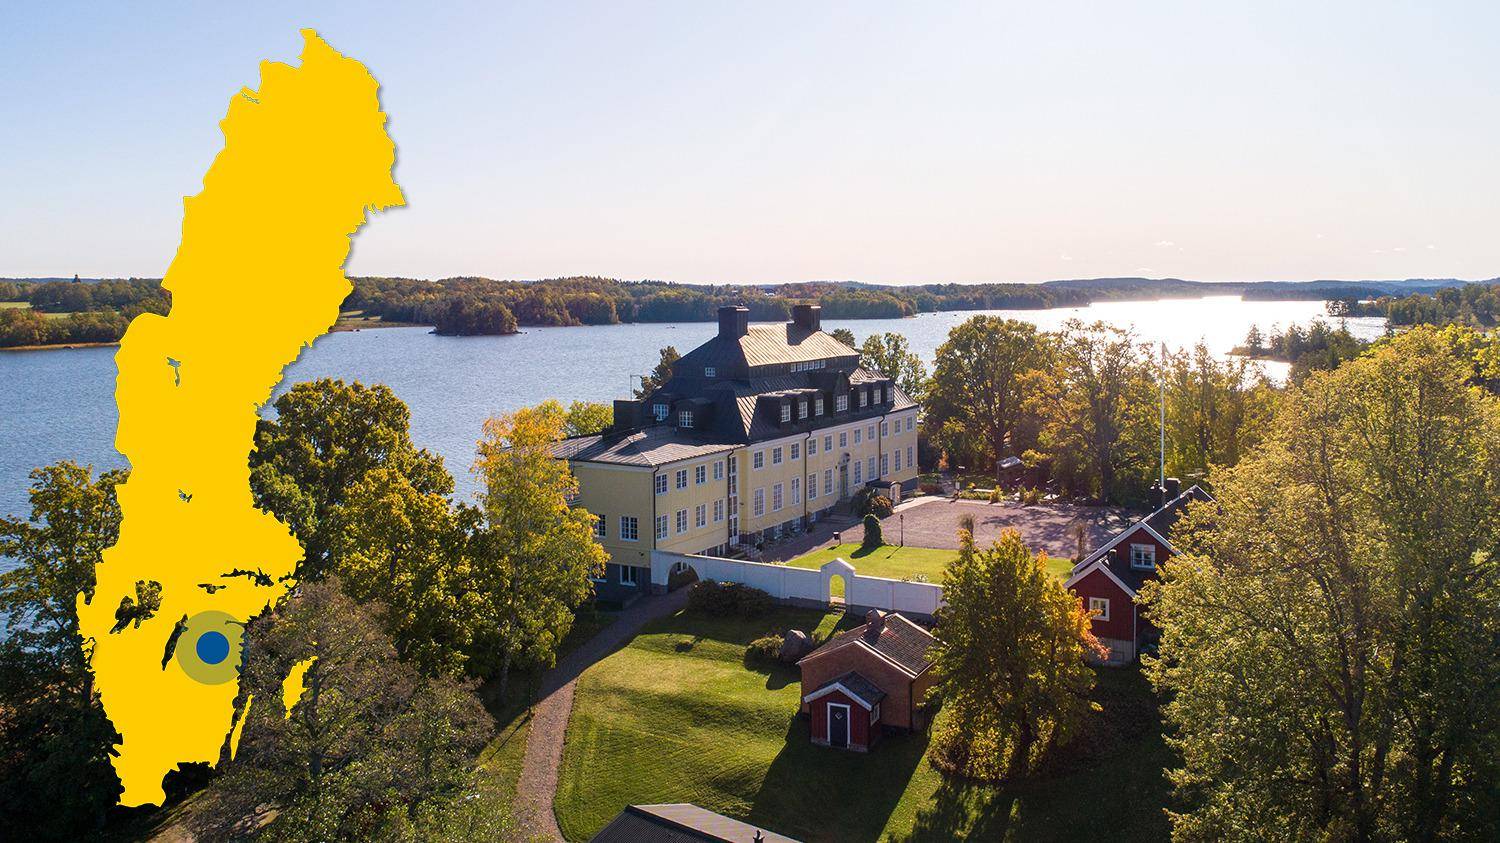 Op een heuvel met uitzicht over het water staat een landhuis met een gele gevel. Op de foto is een gele kaart van Zweden te zien met een merkteken waarop Rimforsa staat.